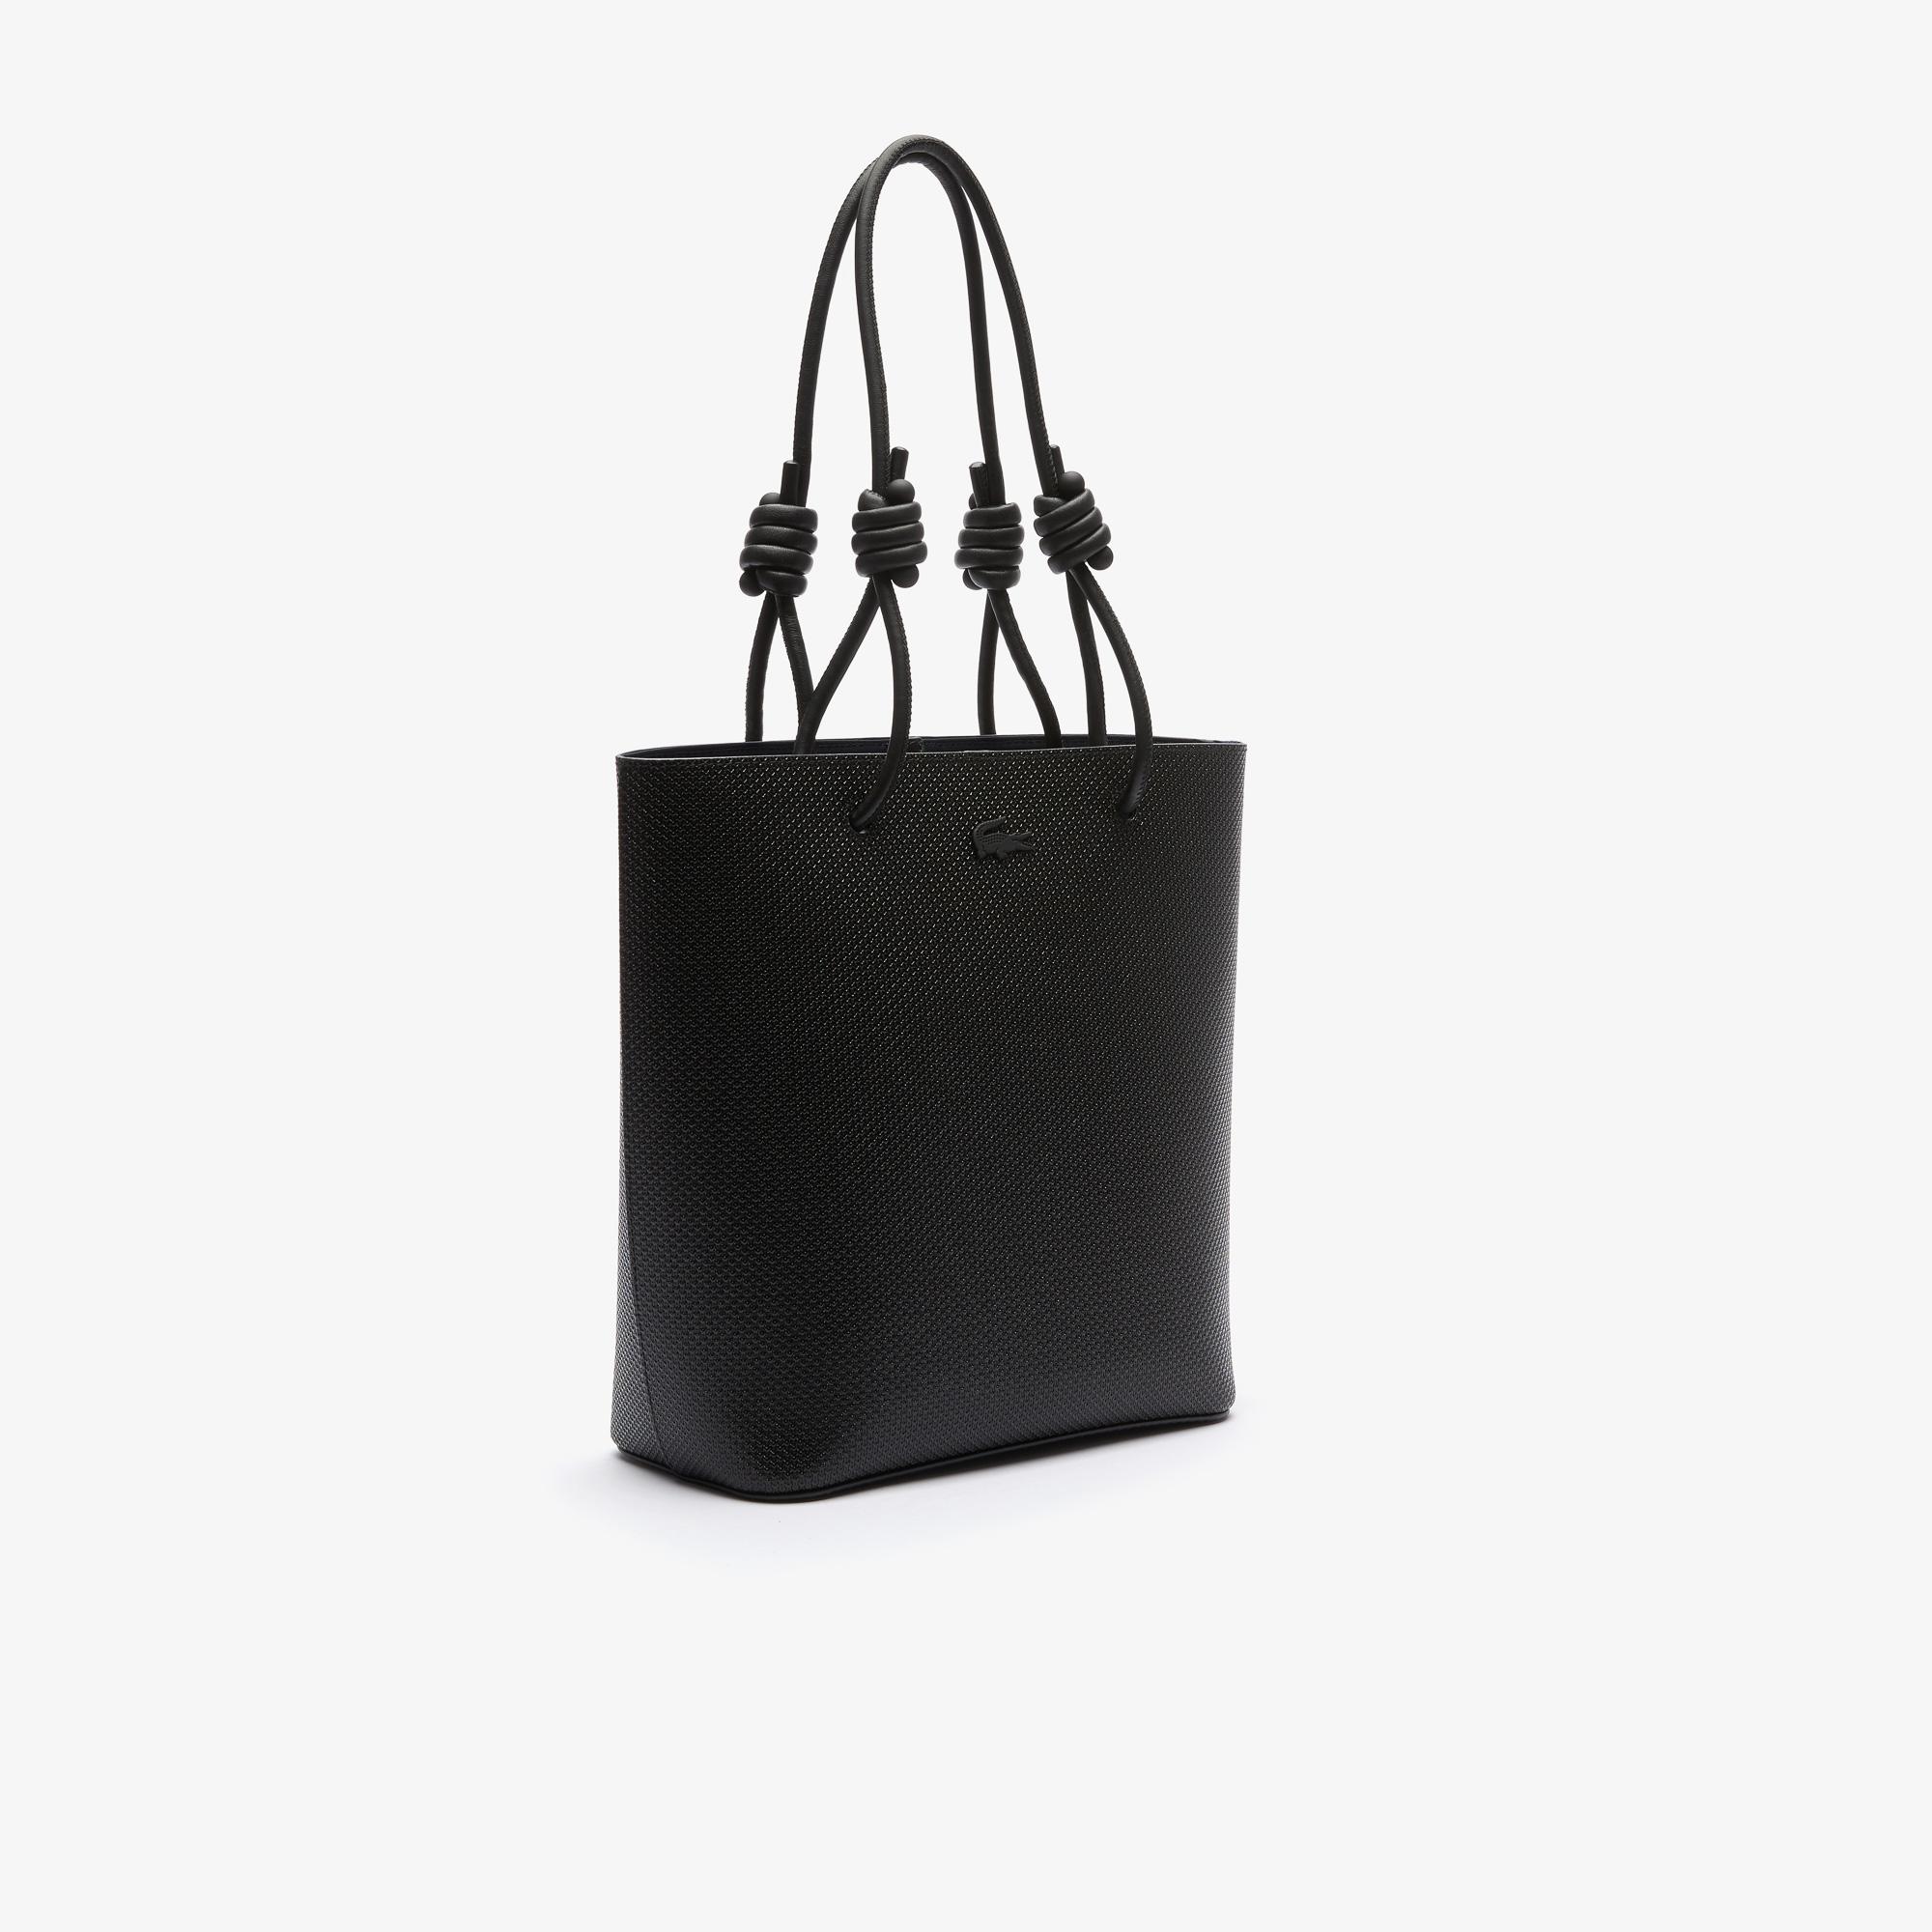 Lacoste Women's Chantaco Matte Piqué Leather Vertical Tote Bag